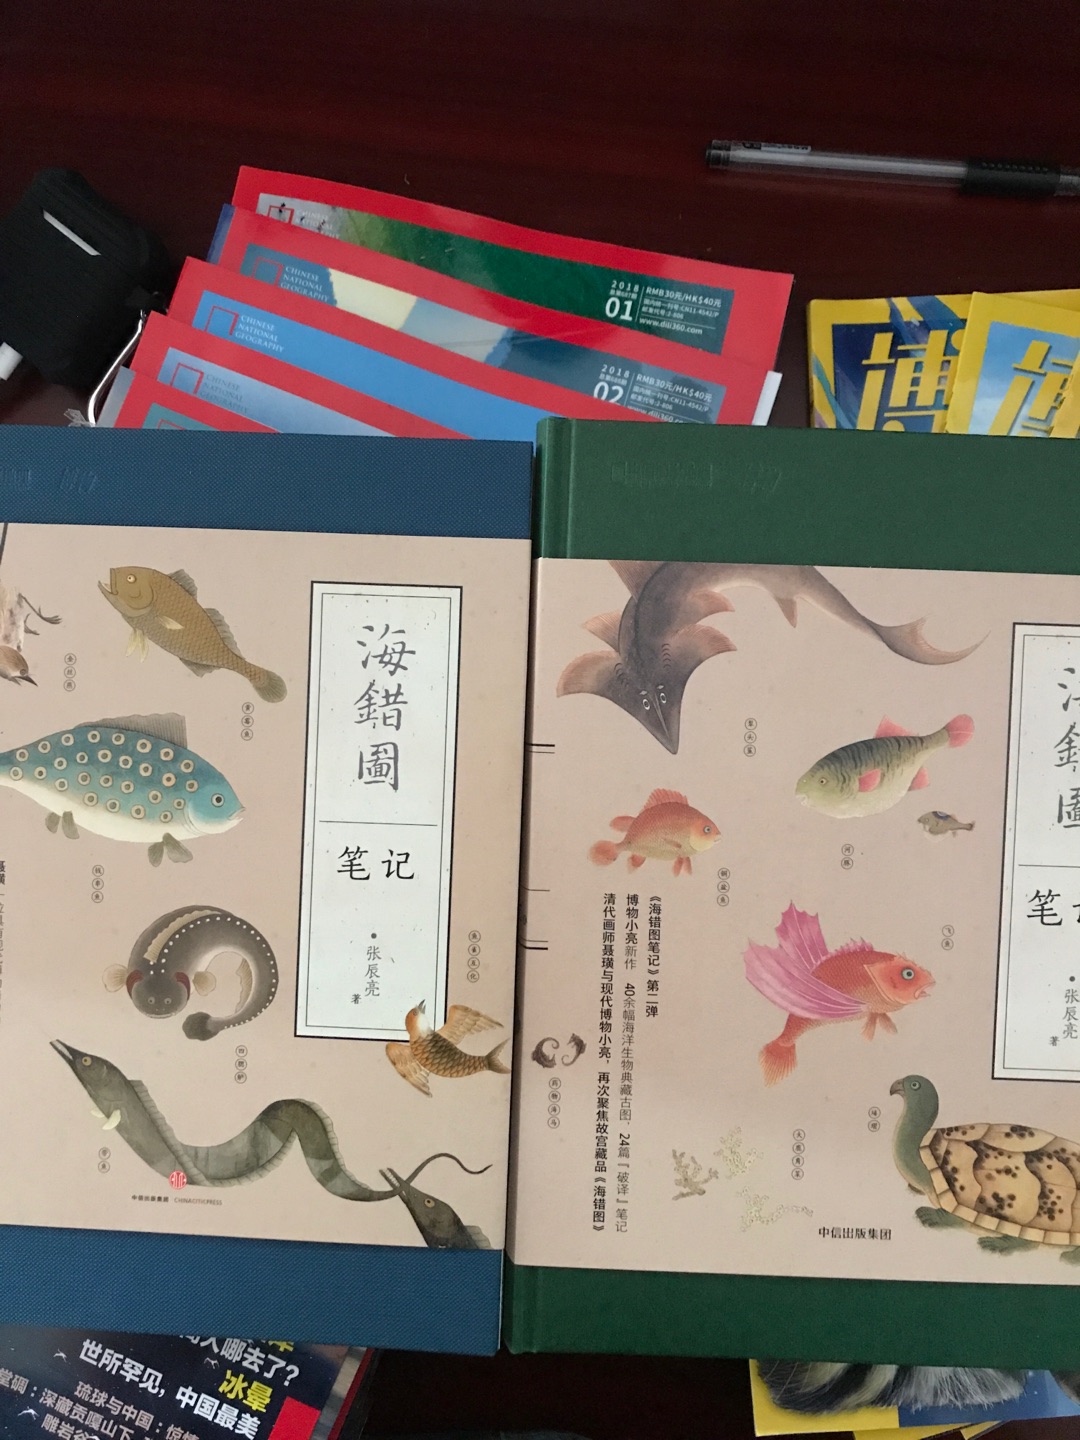 海错 是和博物配套买的 图文并茂的一本科普书籍。可以教孩子认识大自然。